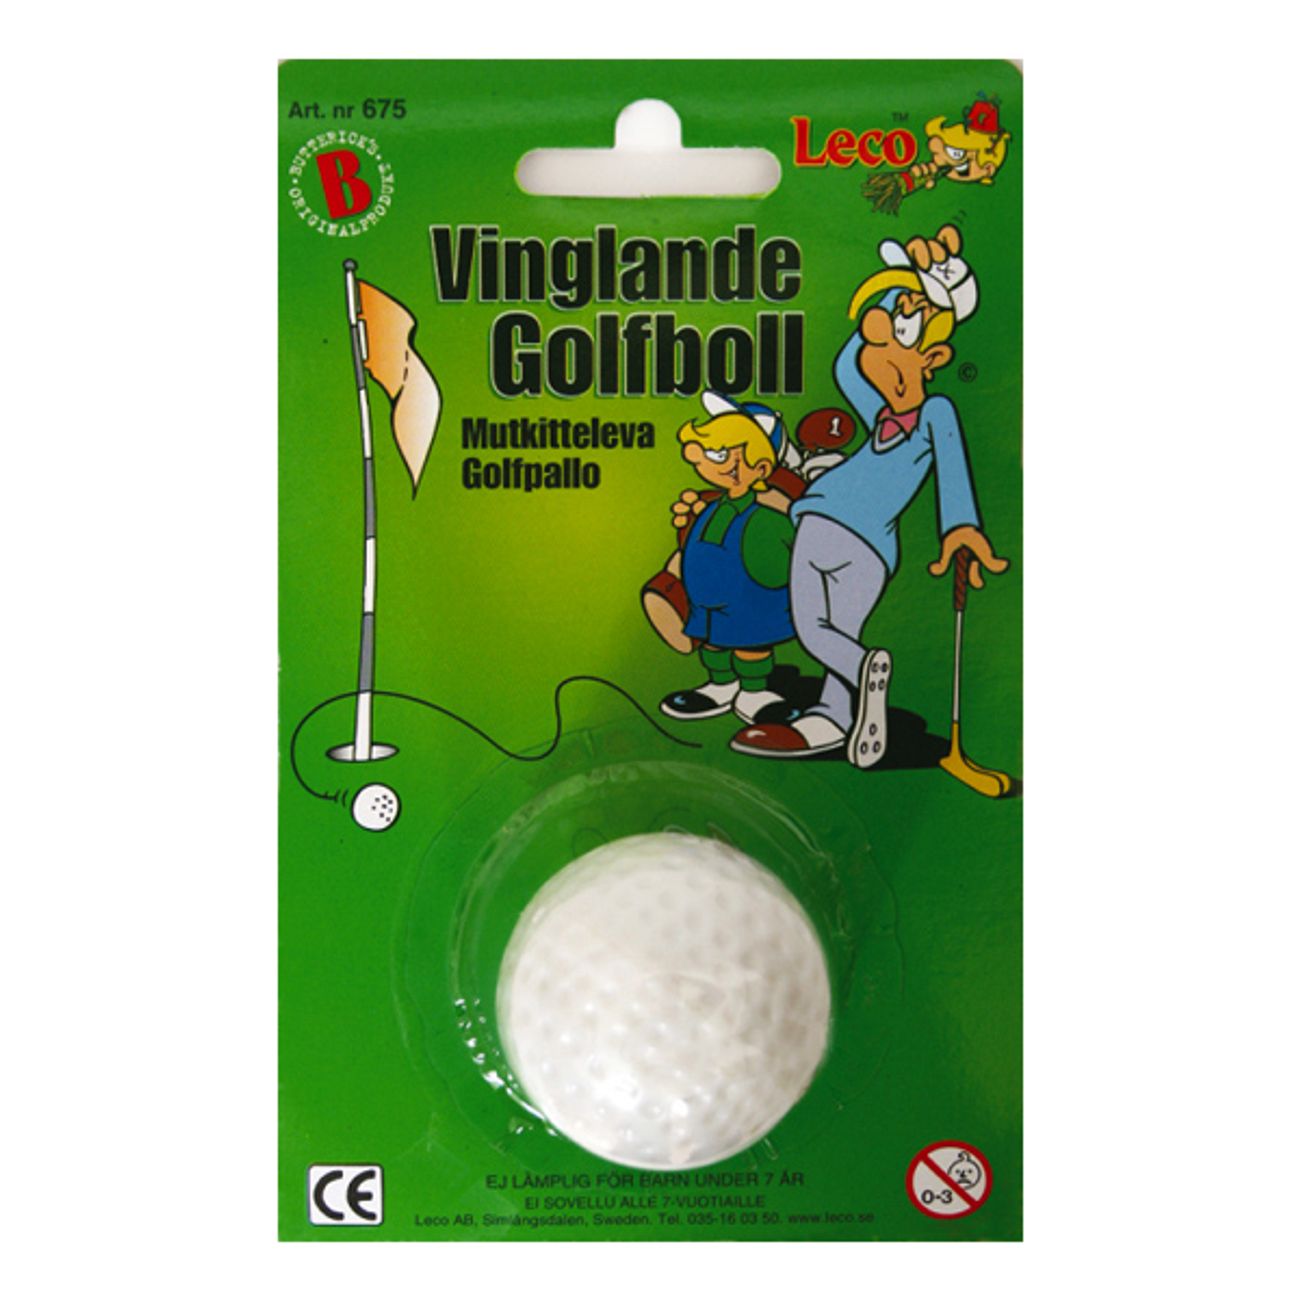 vinglande-golfboll-1